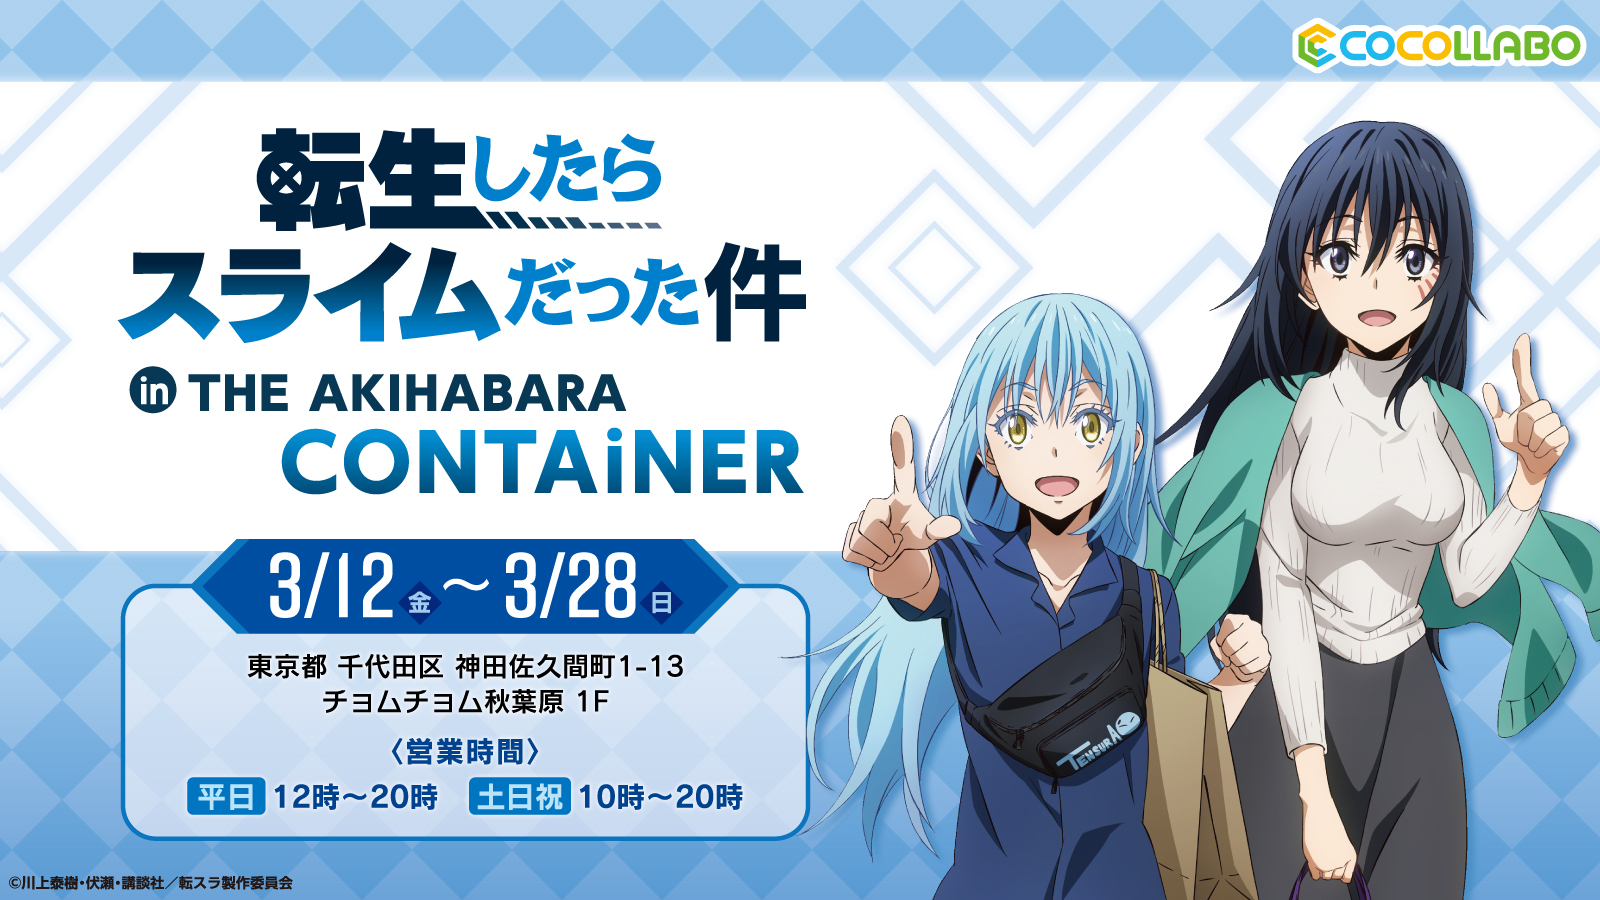 TVアニメ『転生したらスライムだった件』のオンリーショップが、「THE AKIHABARA CONTAiNER」にて3月12日(金)より開催！